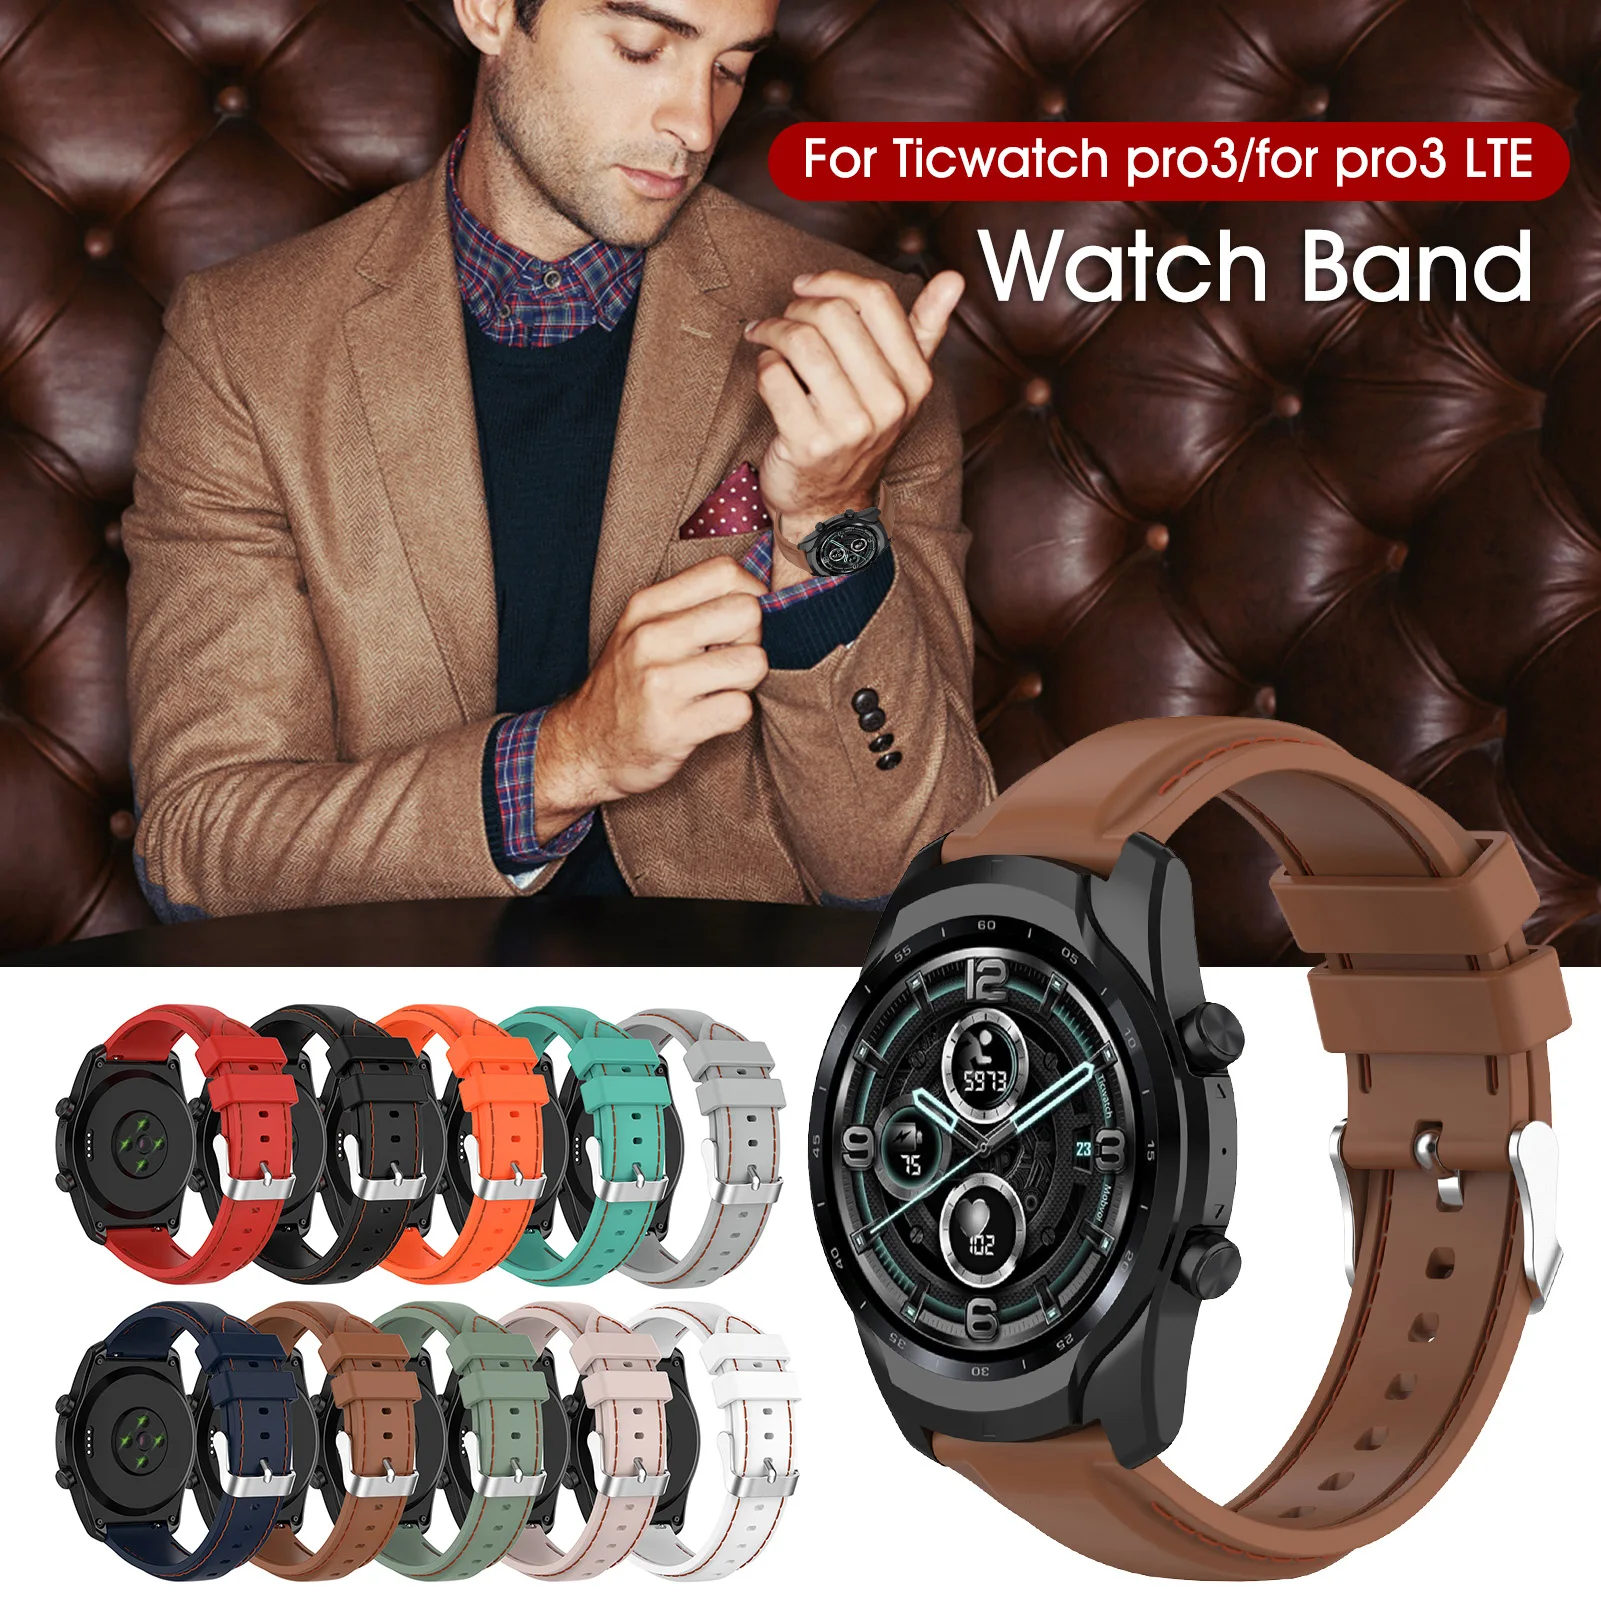 

Ремешок силиконовый для смарт-часов Ticwatch Pro3, сменный мужской браслет для наручных часов Ticwatch Pro3 LTE, 22 мм